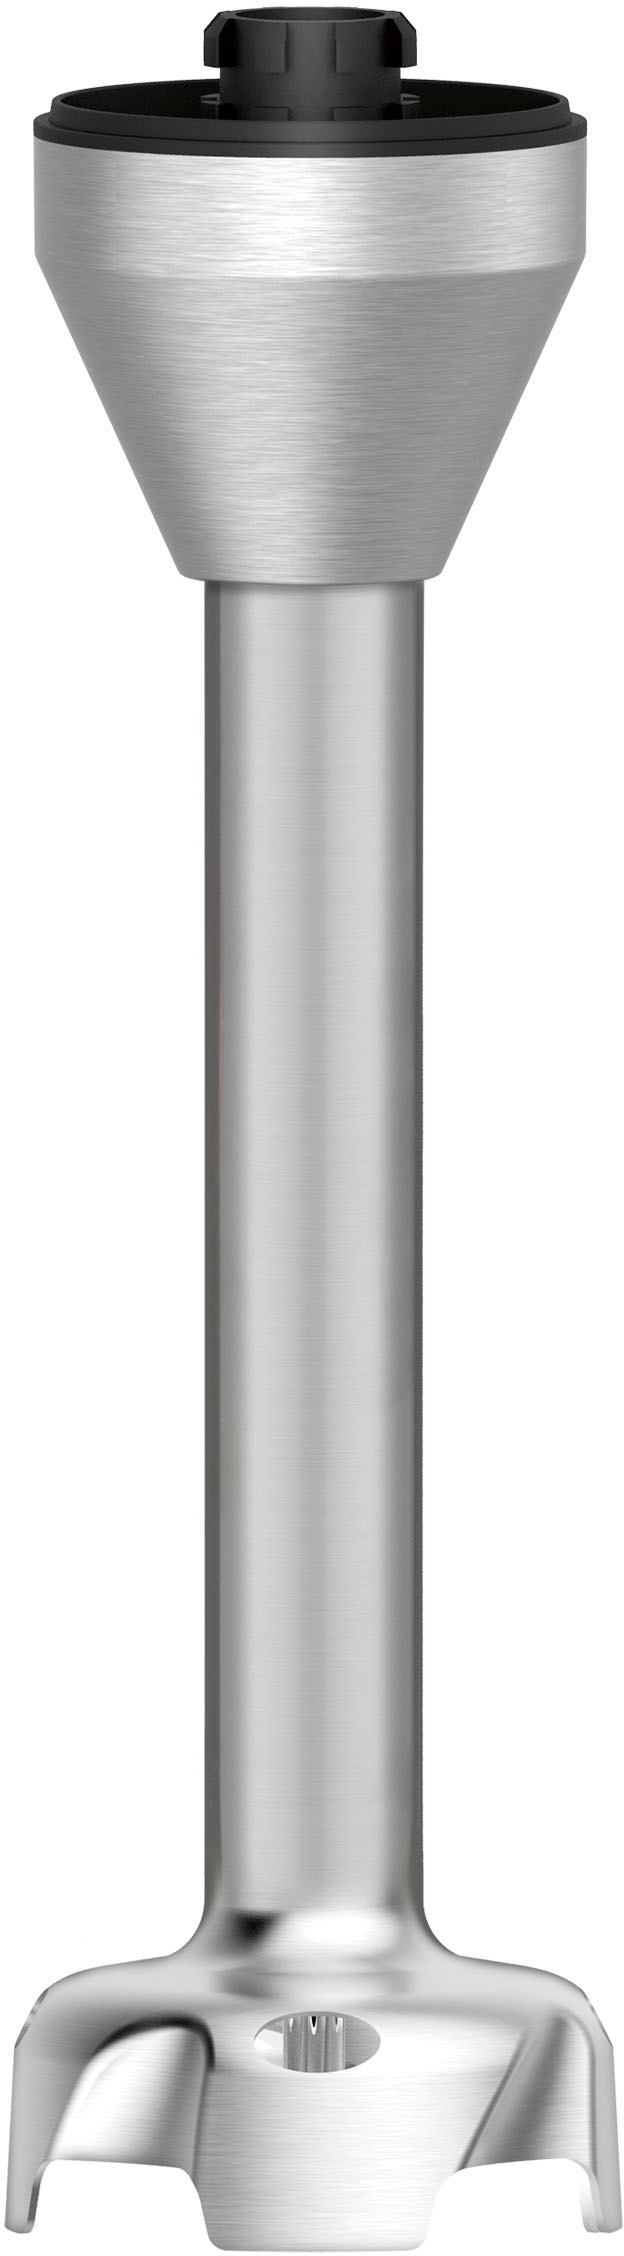 Cuisinart Smart Stick PowerTrio High-Torque Hand Blender CSB-80 Silver  CSB-80 - Best Buy